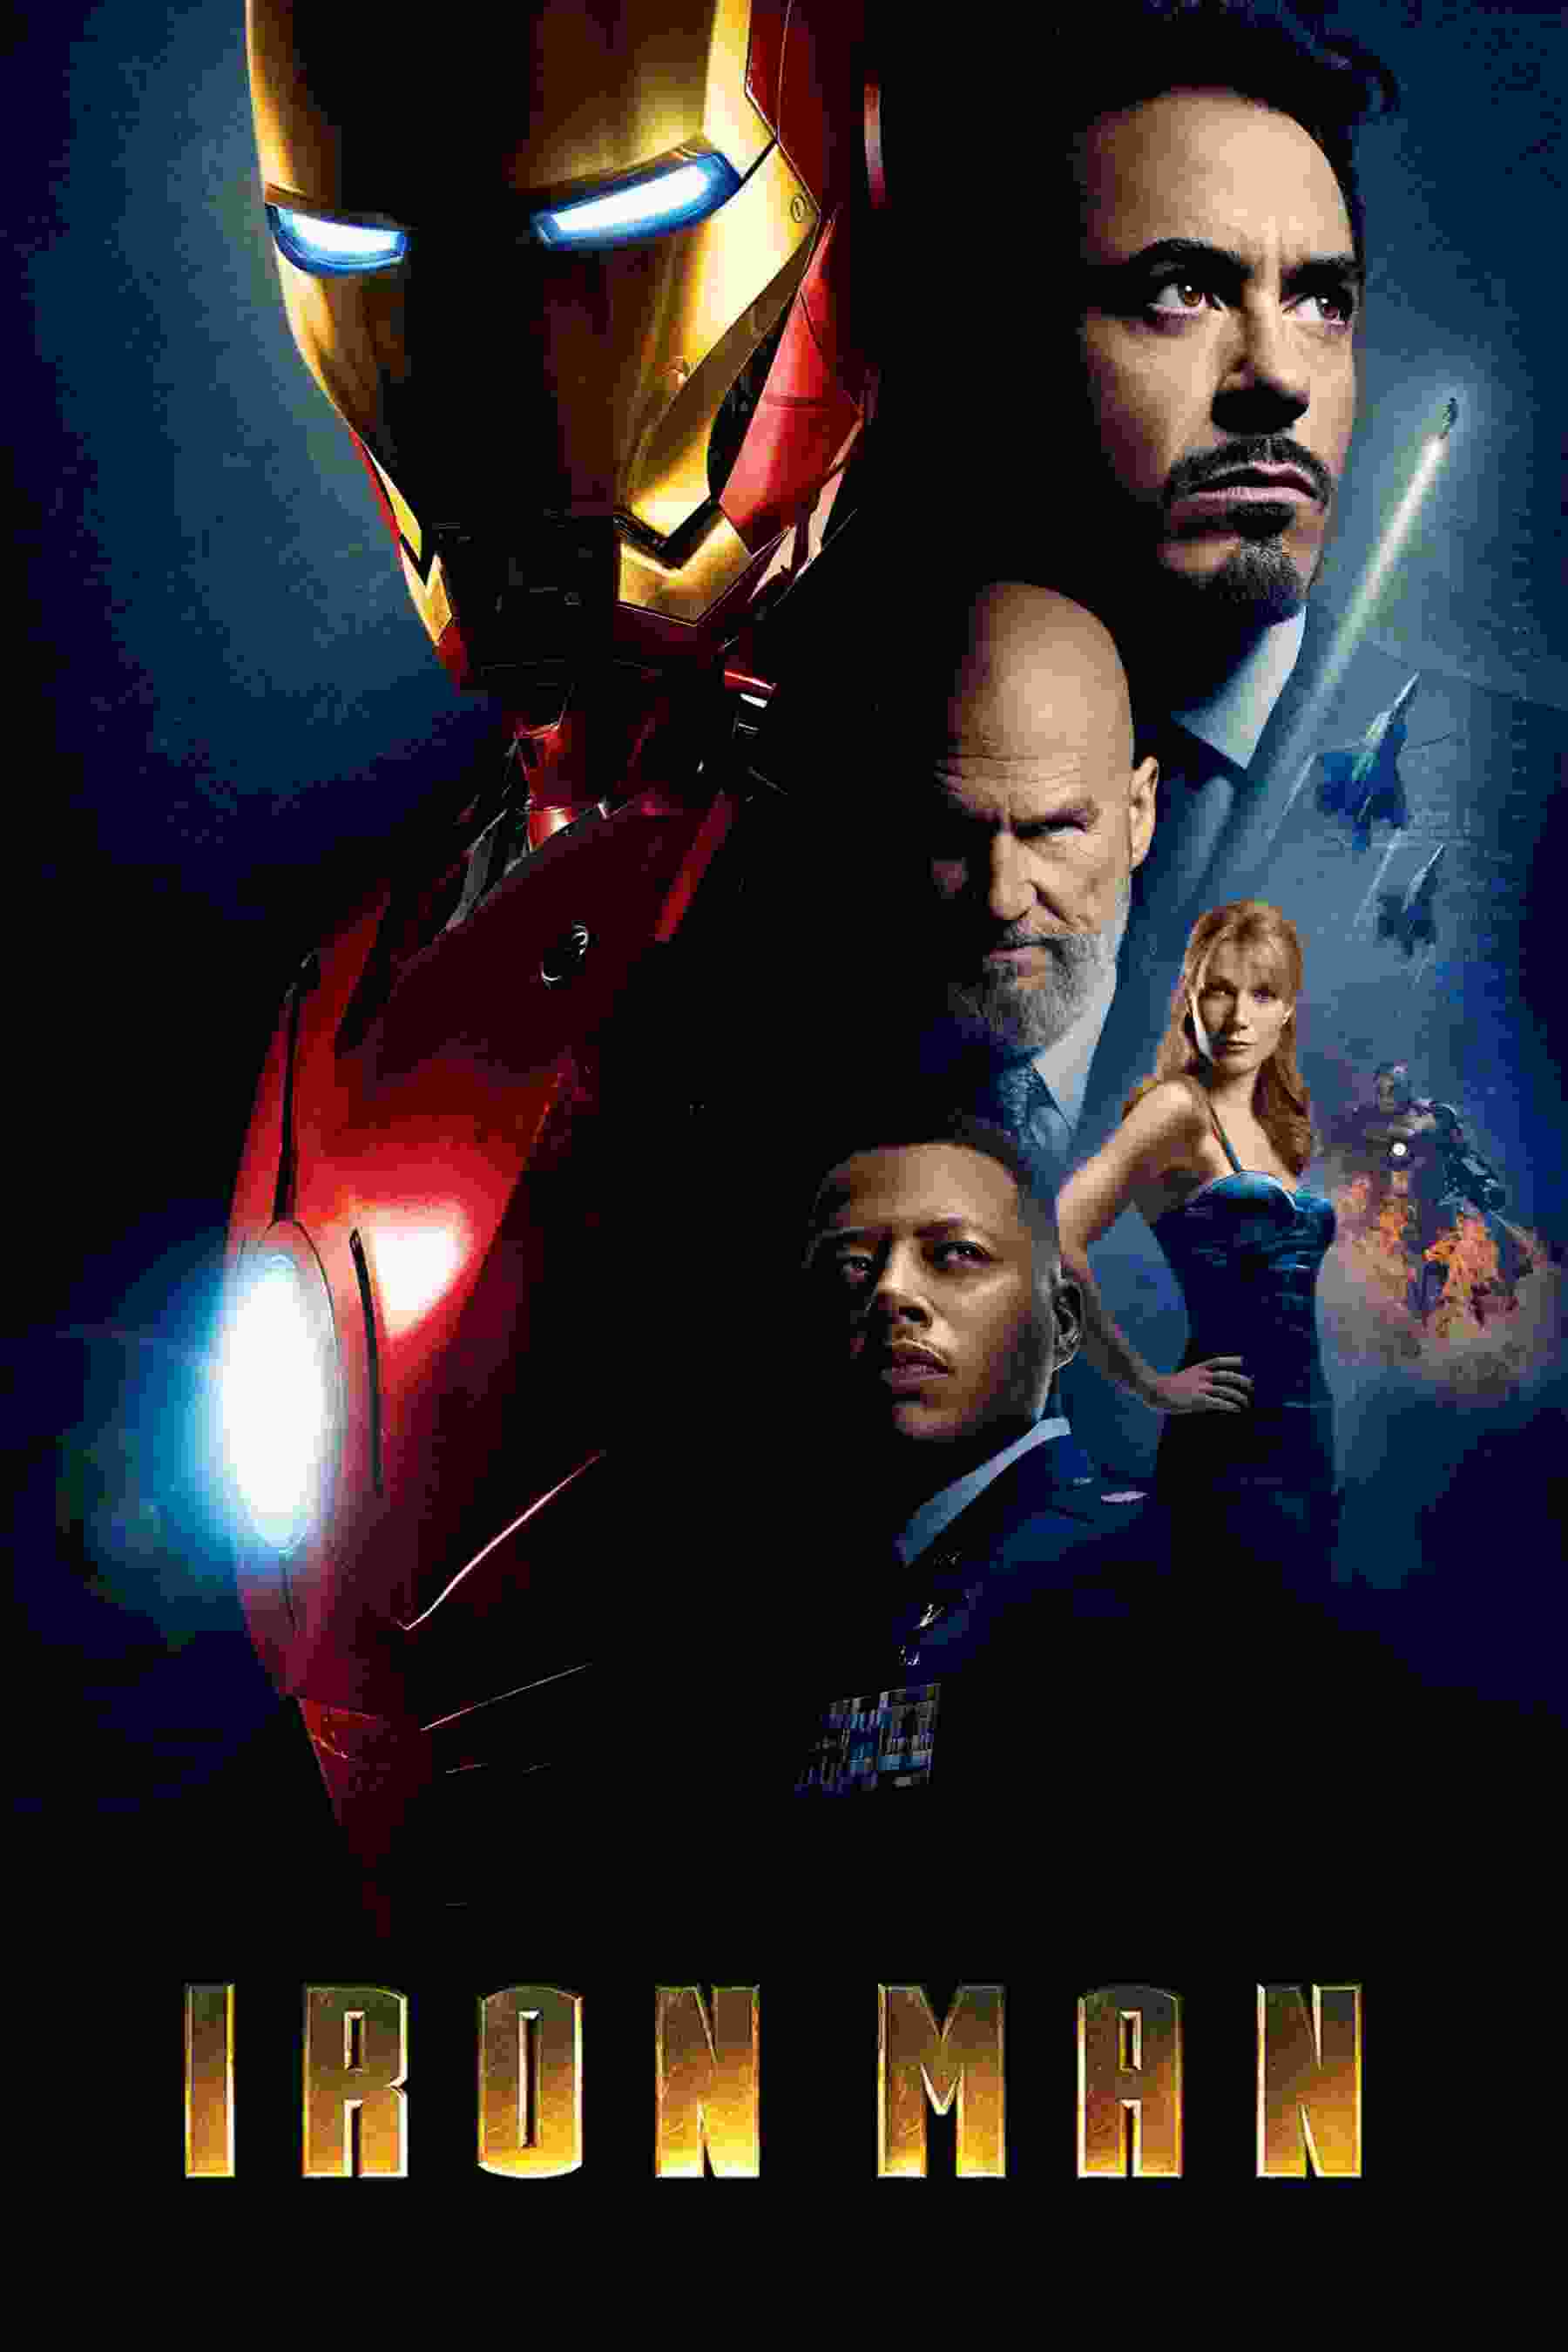 Iron Man (2008) Robert Downey Jr.